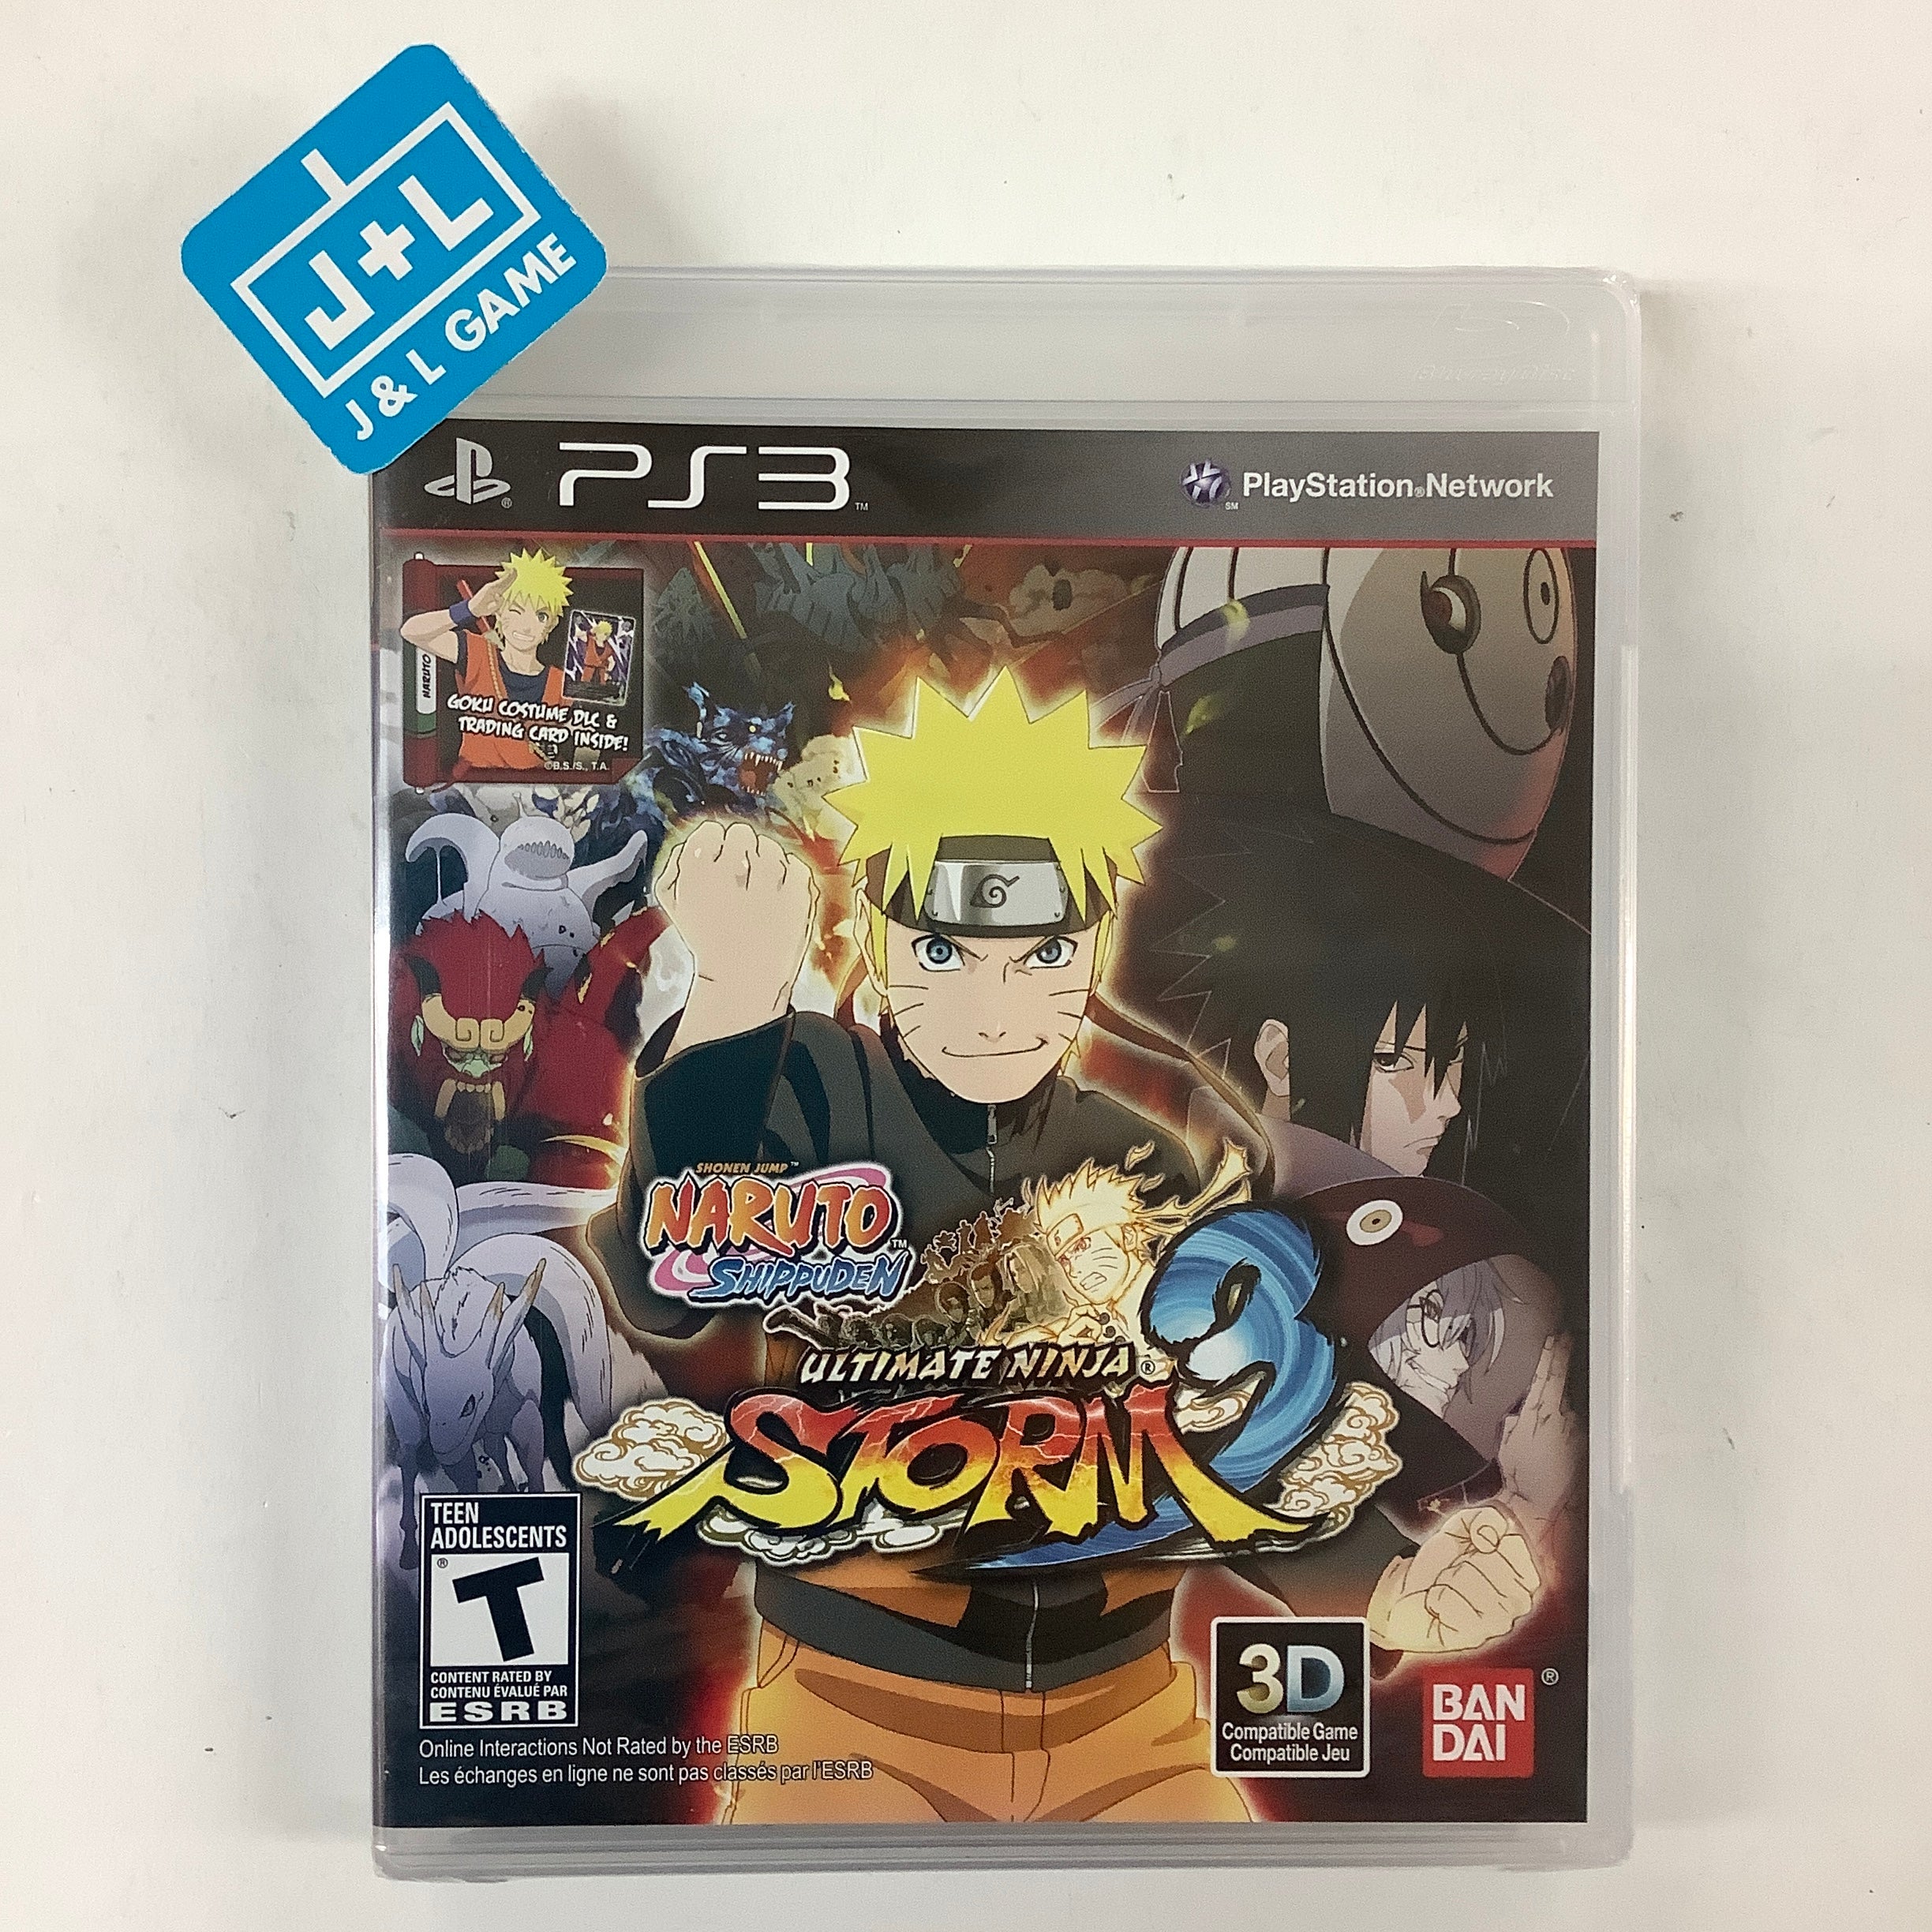 Naruto Shippuden: Ultimate Ninja Storm 3 - (PS3) PlayStation 3 Video Games Namco Bandai Games   